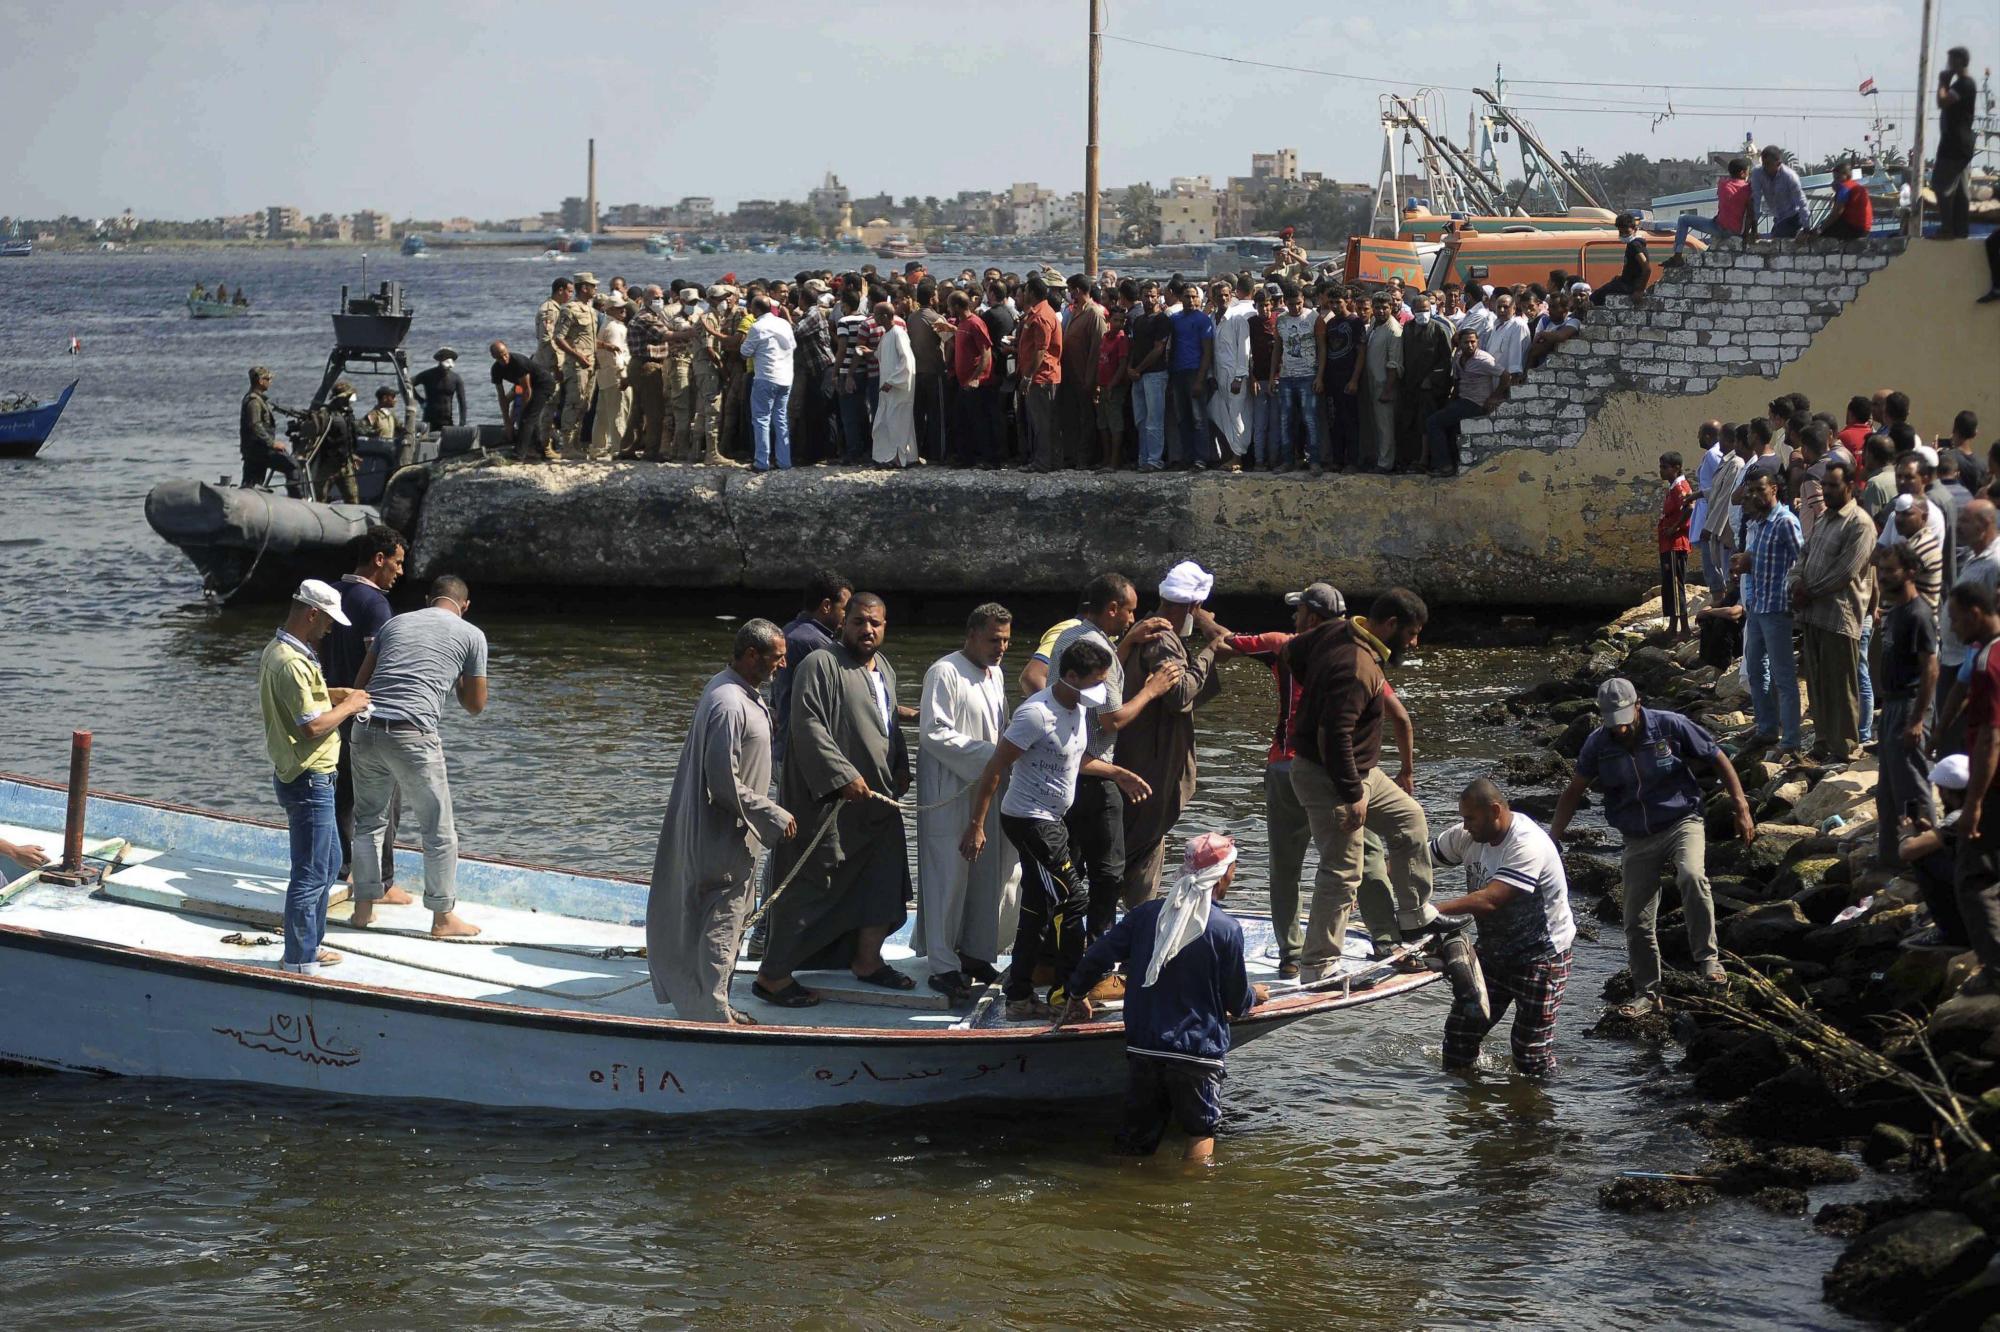 Vigilancia en Egipto para frenar emigración ilegal